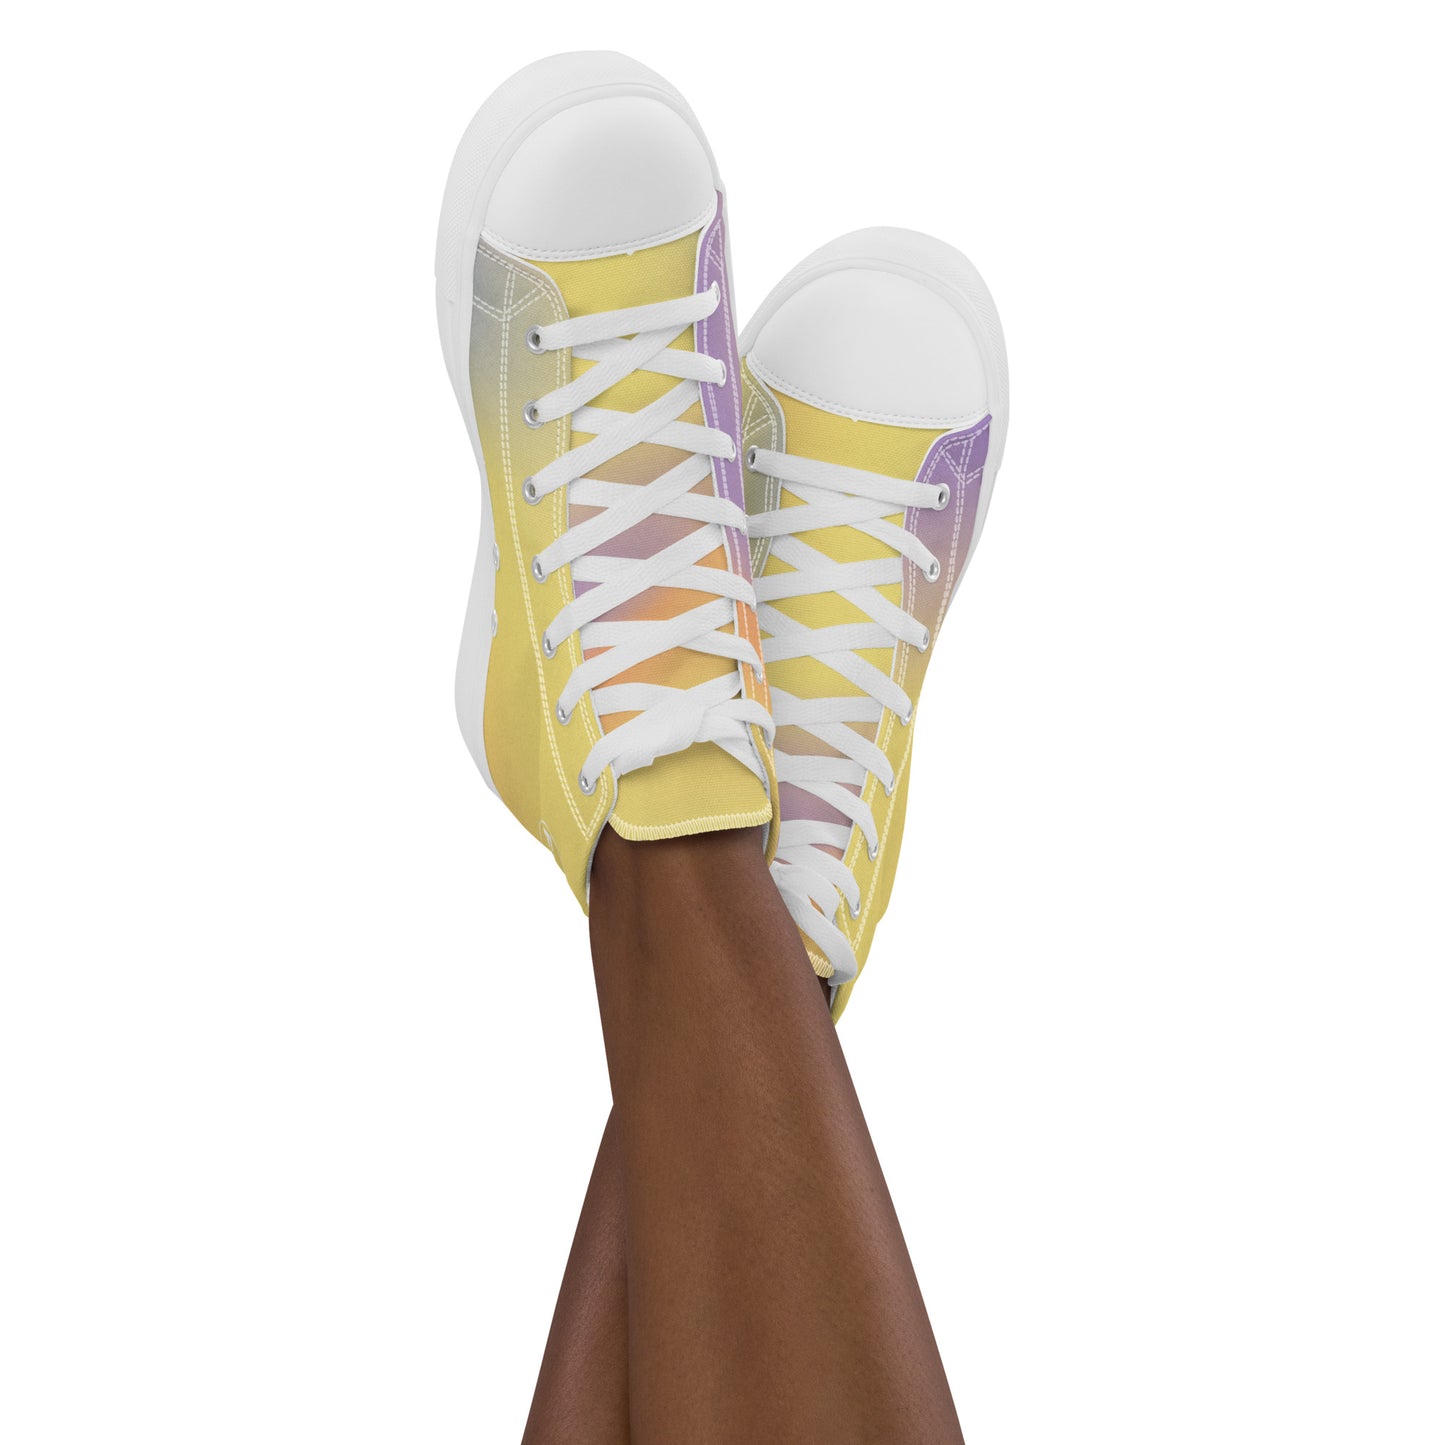 FYD Women’s High Top Sneakers in yellow iridescent wavelength